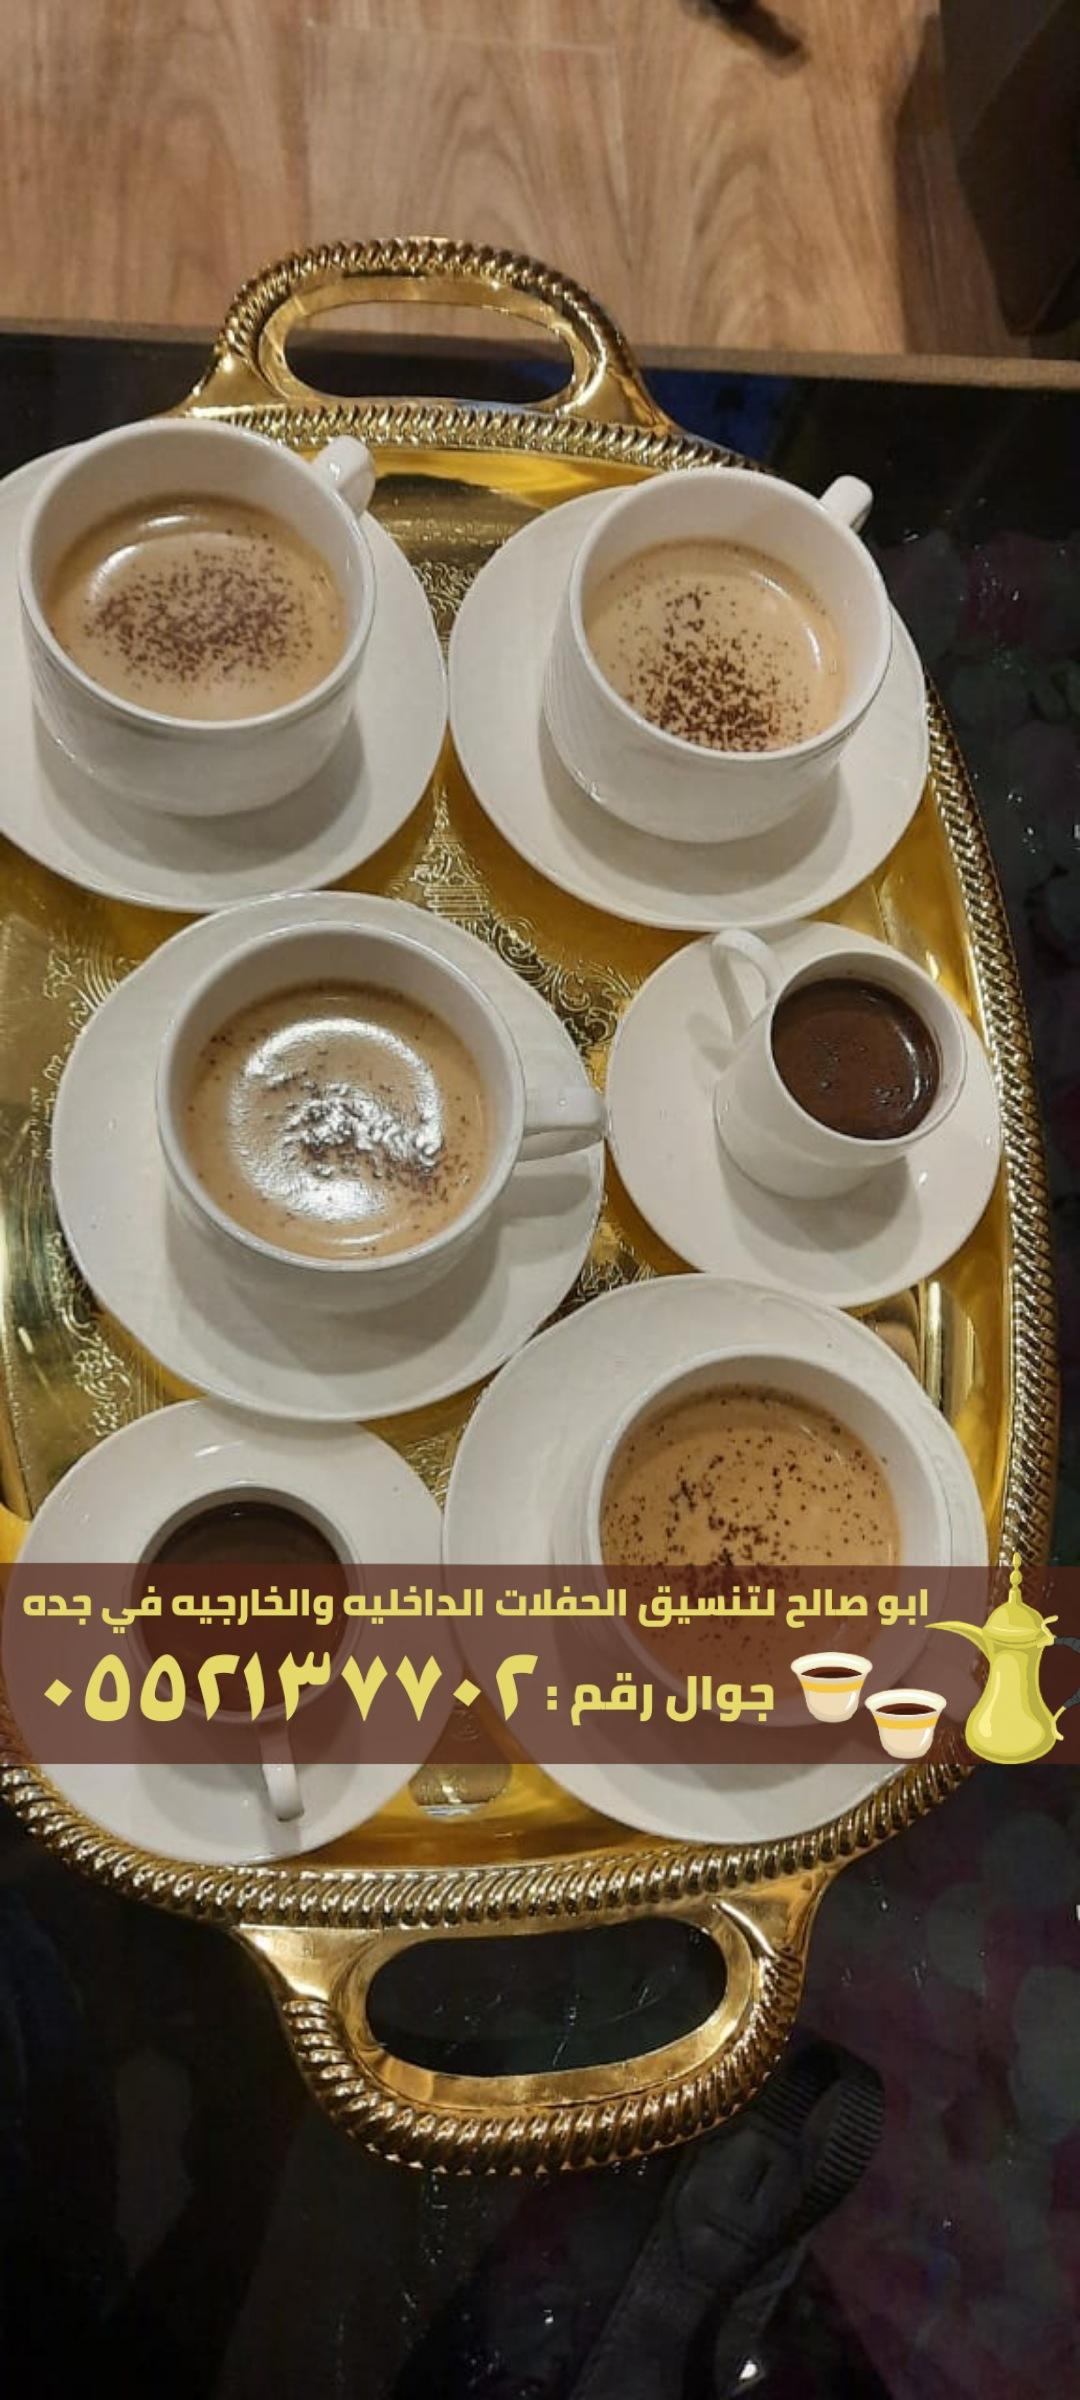 قهوجيات و مباشرات قهوة في جدة,0552137702 126267019